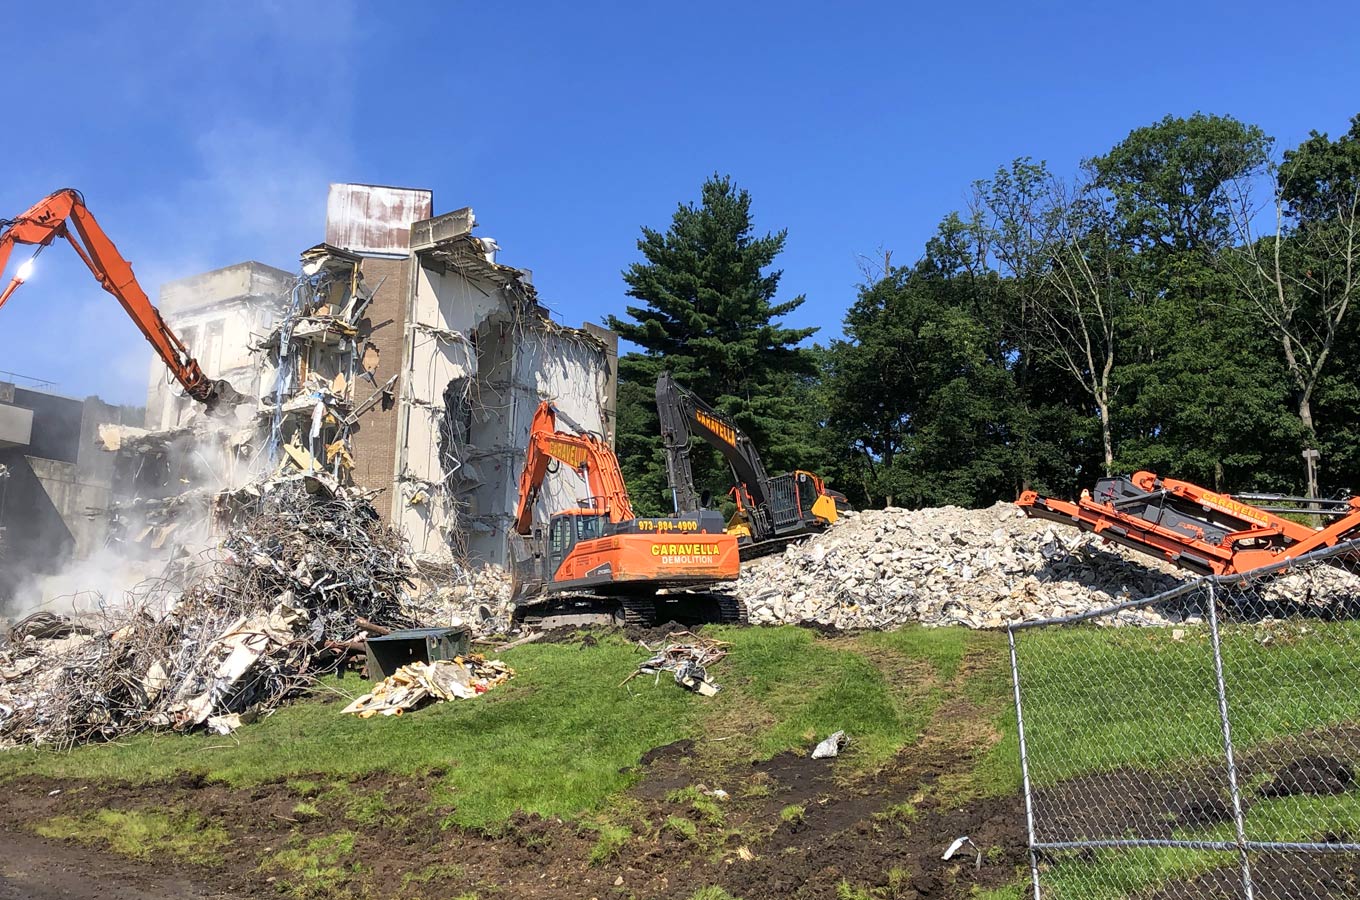 Demolition Services in Ocean County, NJ | Caravella Demolition